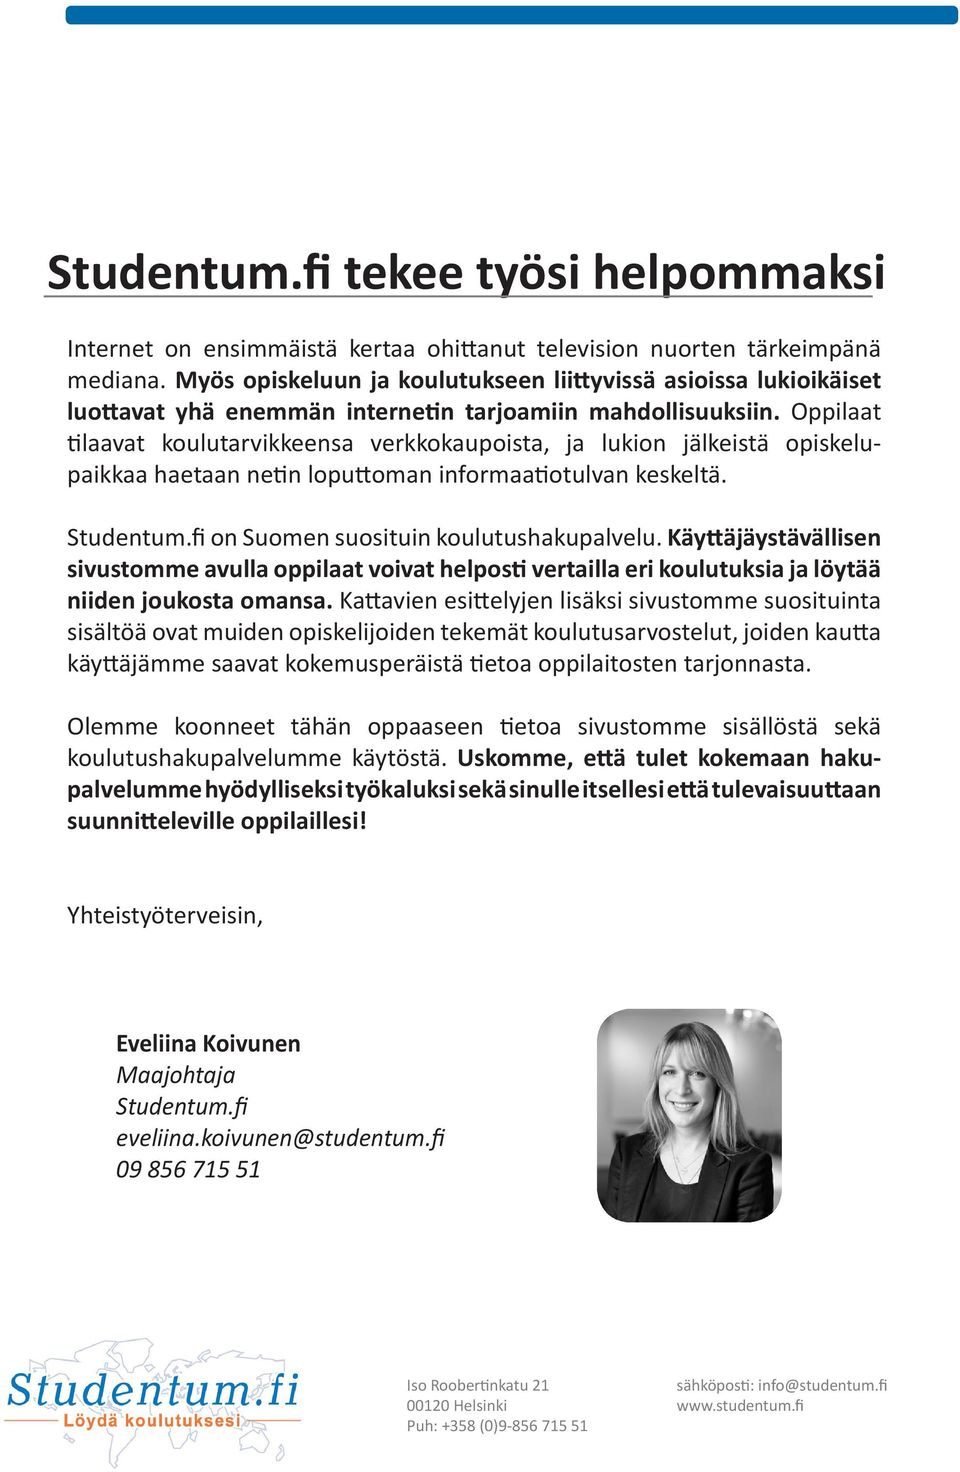 Oppilaat tilaavat koulutarvikkeensa verkkokaupoista, ja lukion jälkeistä opiskelupaikkaa haetaan netin loputtoman informaatiotulvan keskeltä. Studentum.fi on Suomen suosituin koulutushakupalvelu.